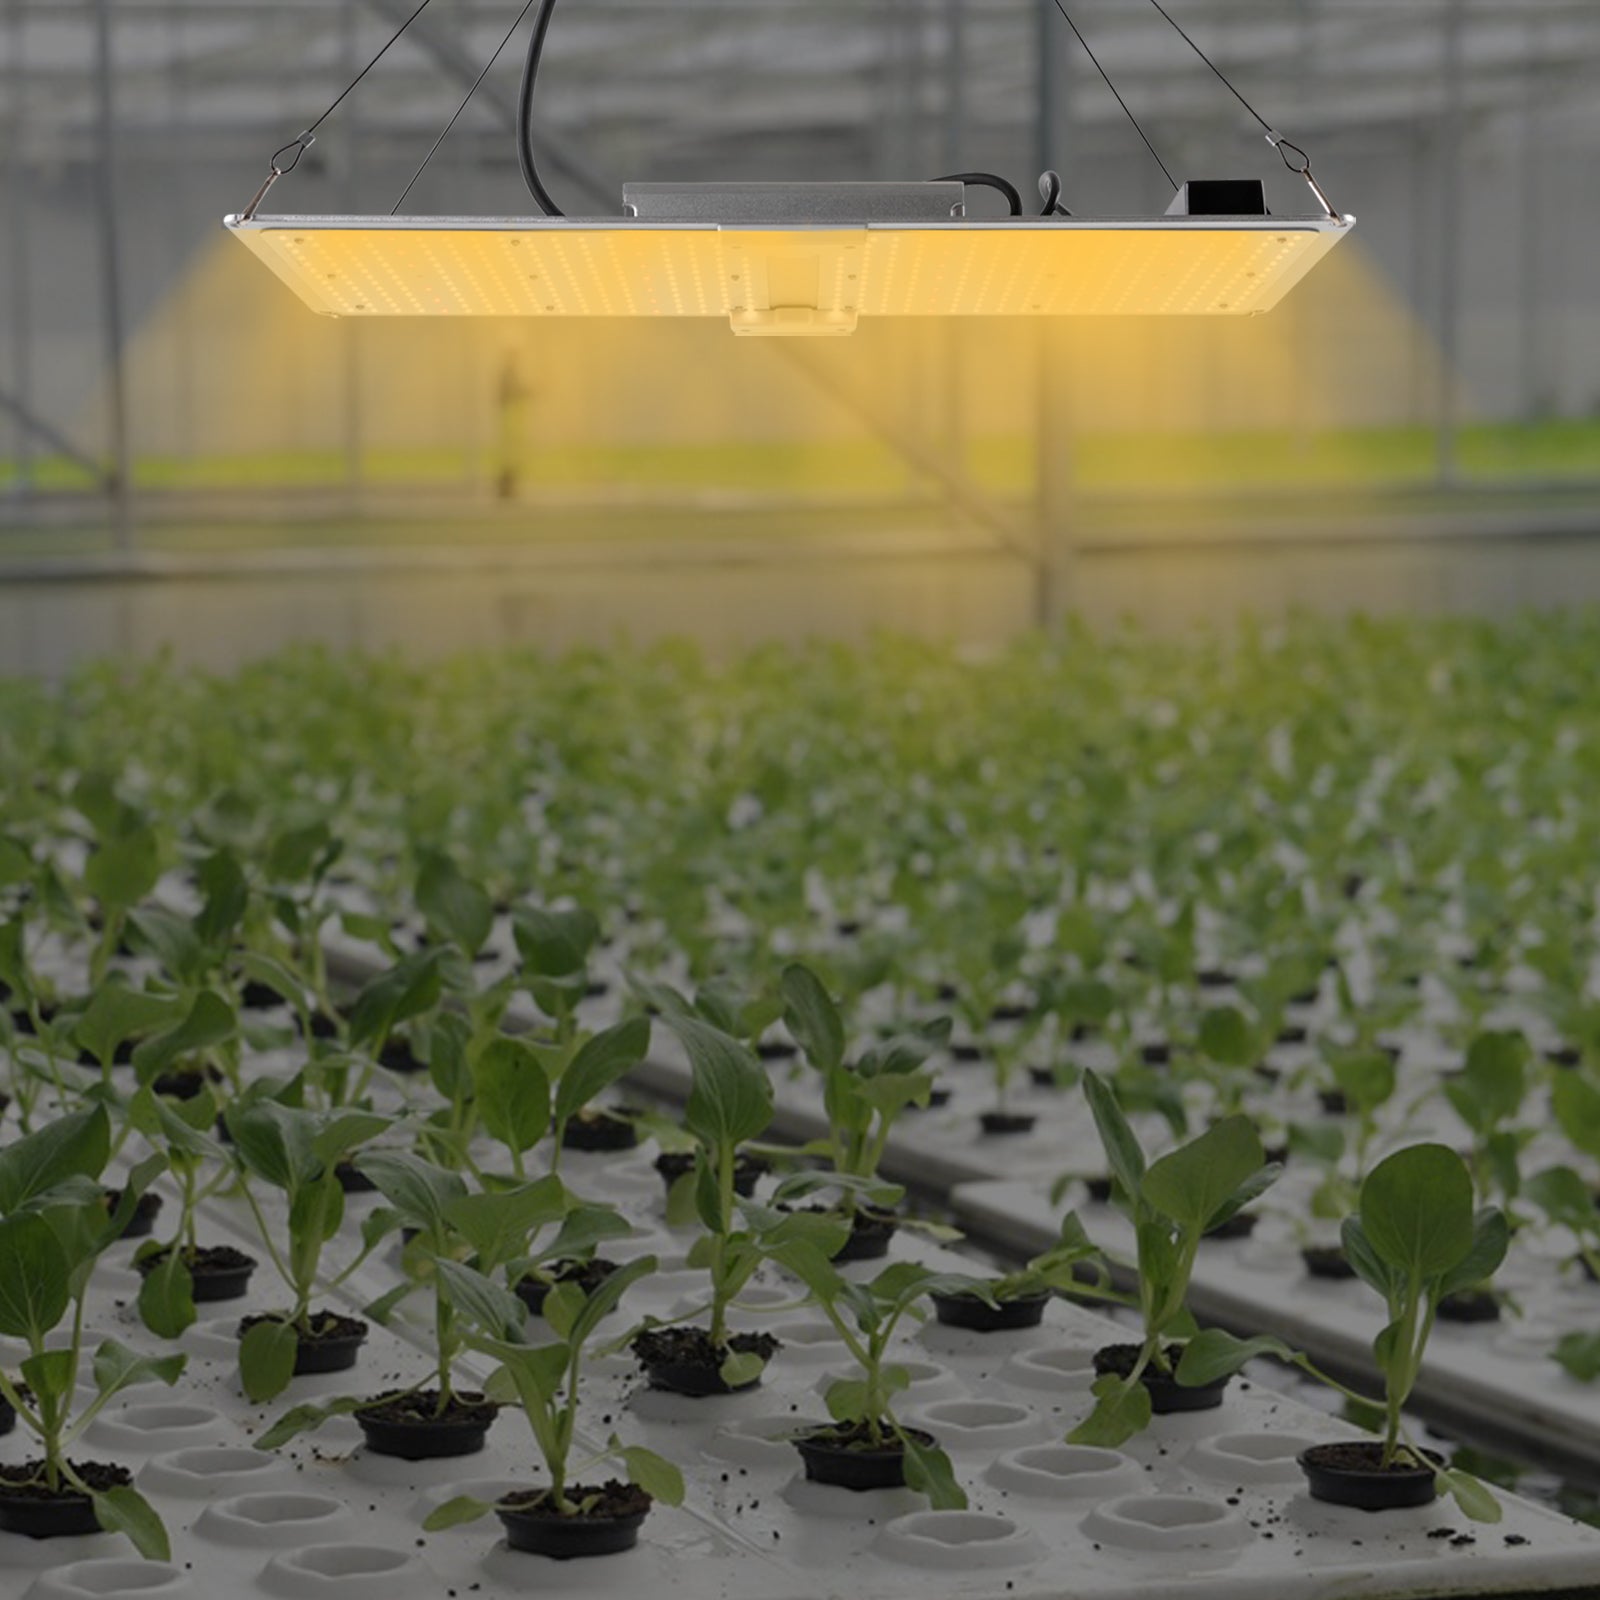 Lampada a LED Grow Light, 450 W, per interni, spettro completo con LM301B e dimmerabile, per piante idroponiche, verdure, fiori